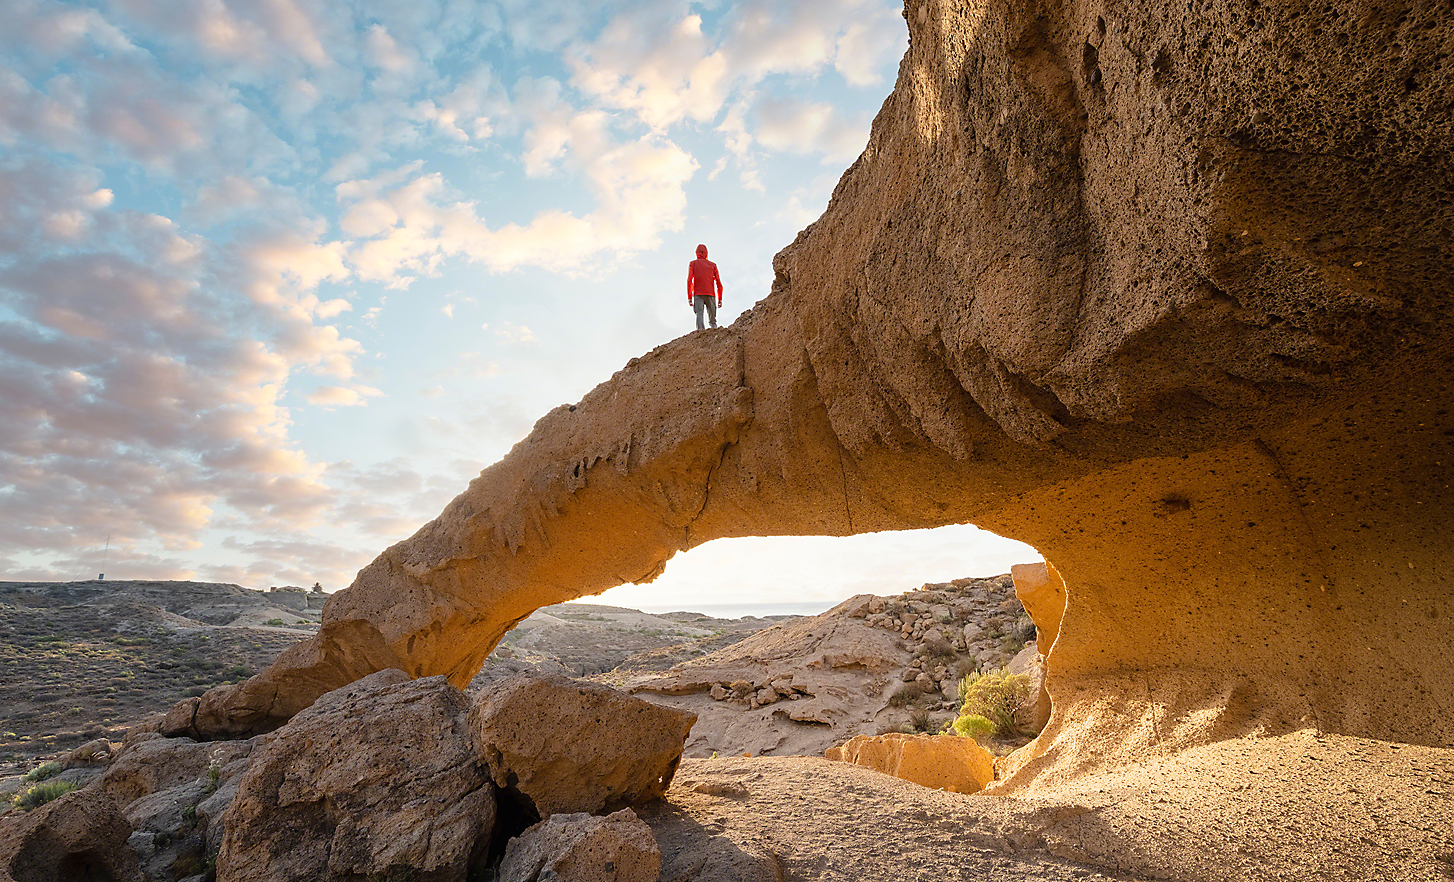 Ultra-groothoekopname van een man die op een rotsformatie staat en uitkijkt op een woestijnlandschap